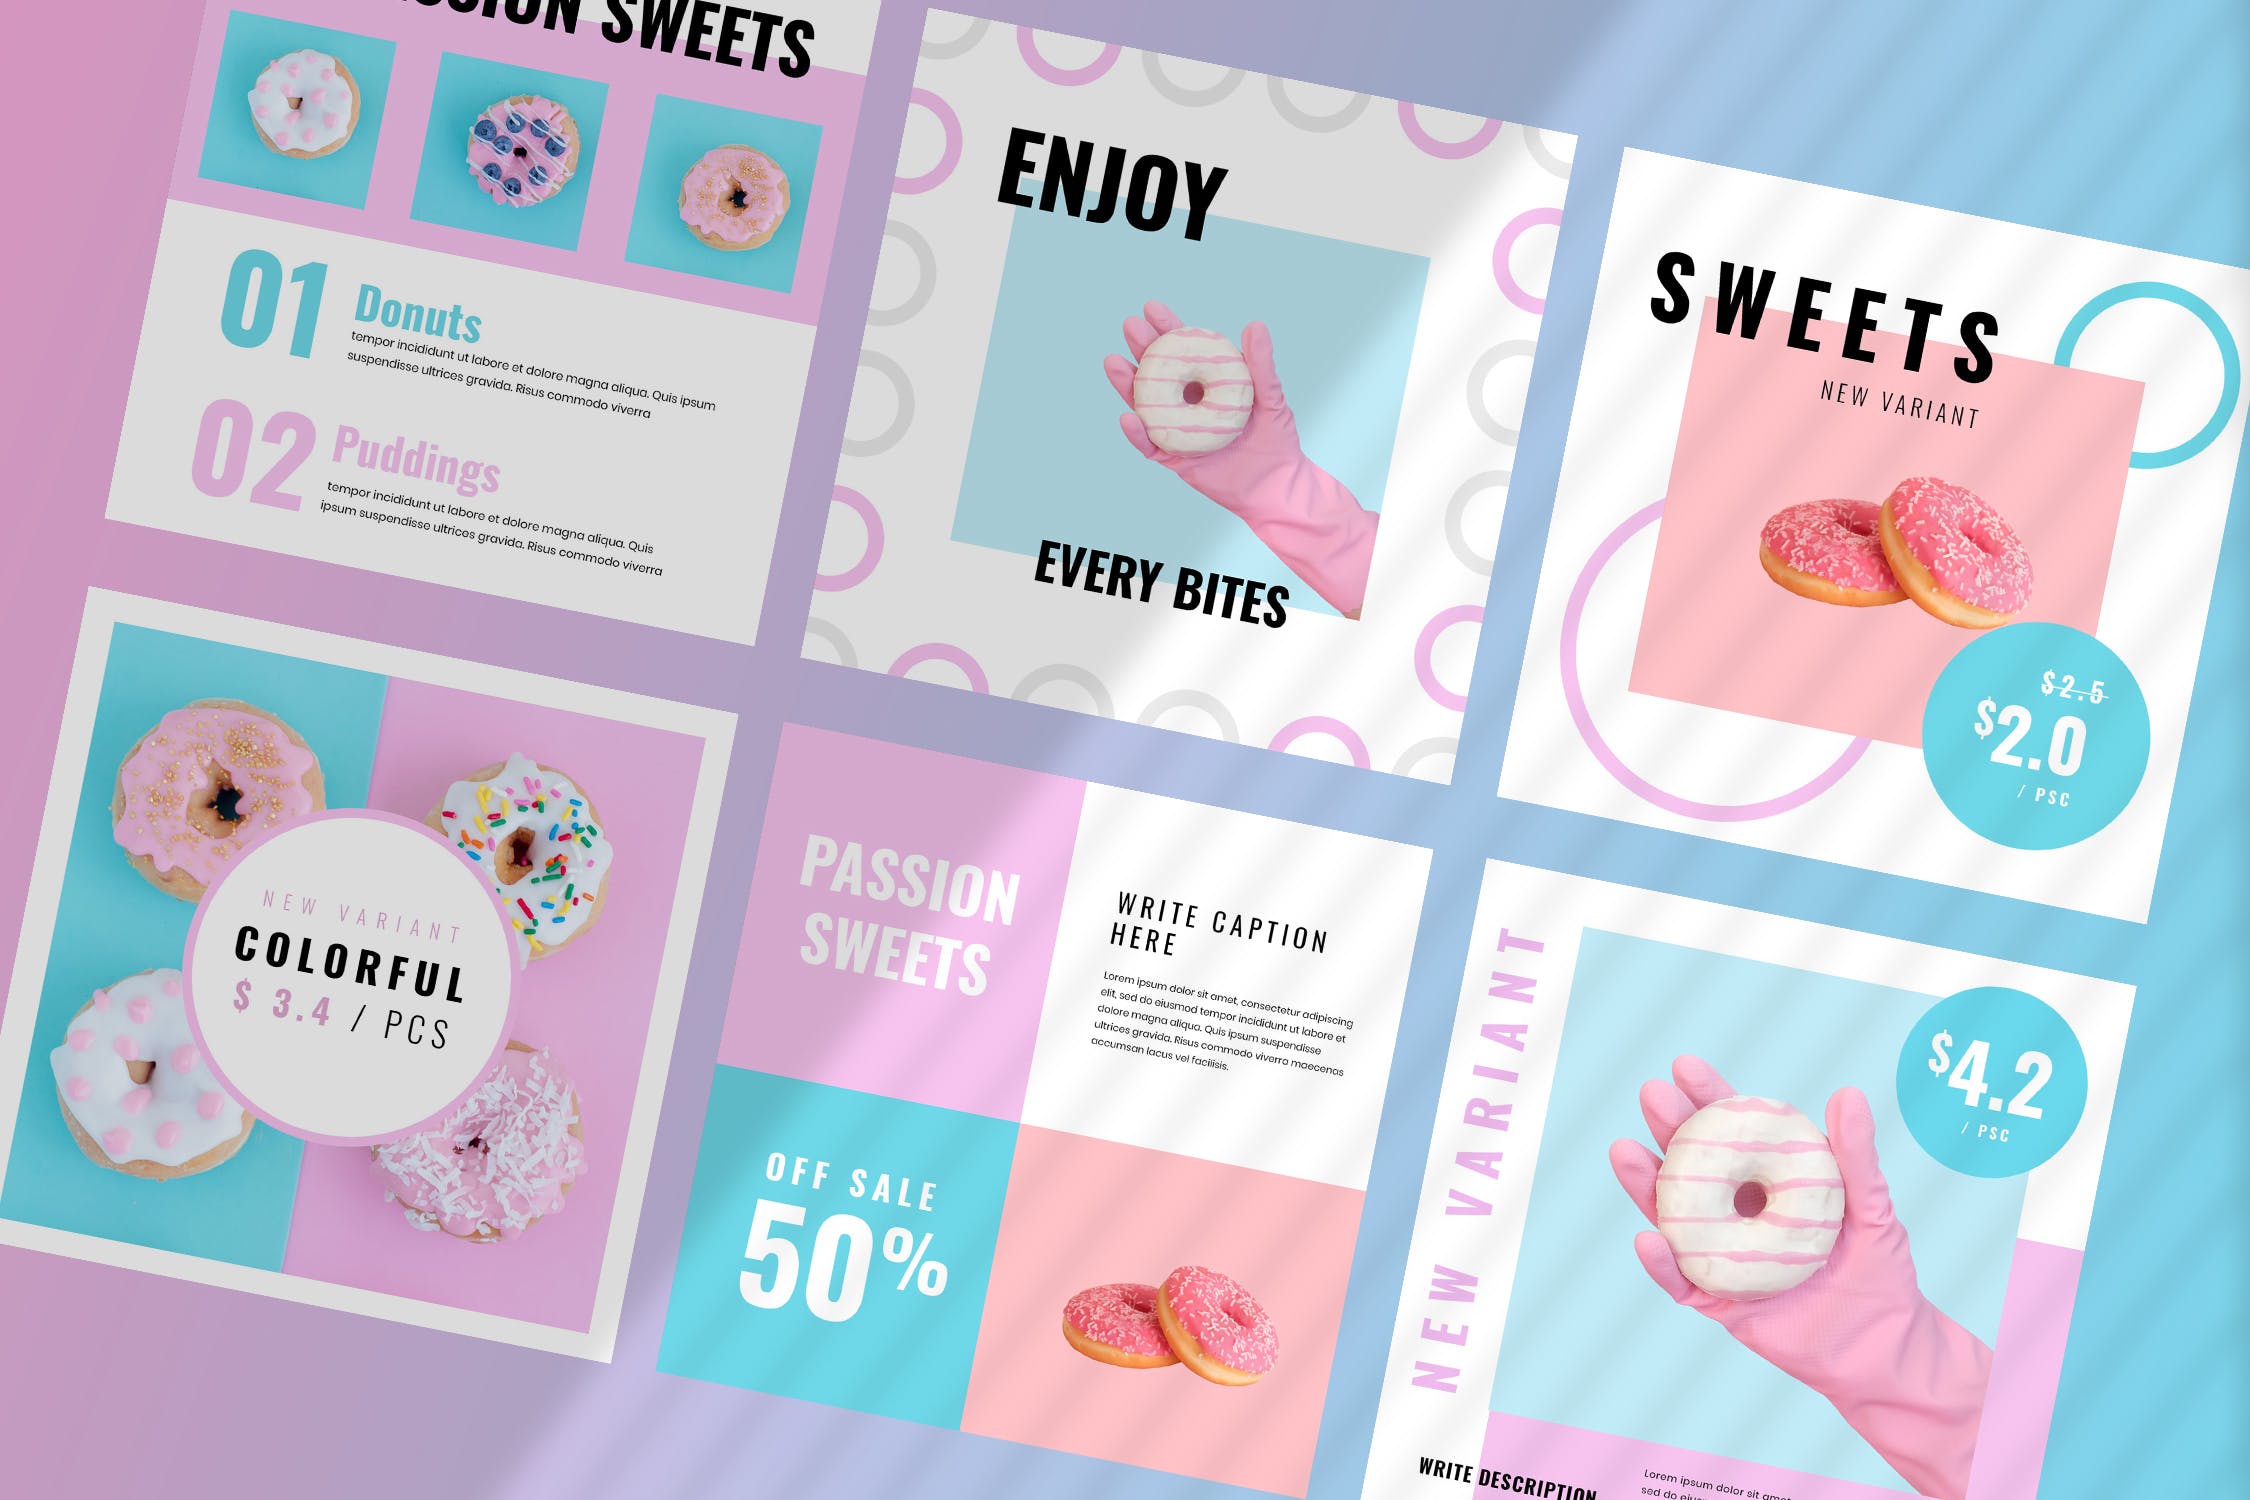 烘焙糕点面包品牌社交推广设计素材包 Fiveteen – Social Media Kit插图(3)